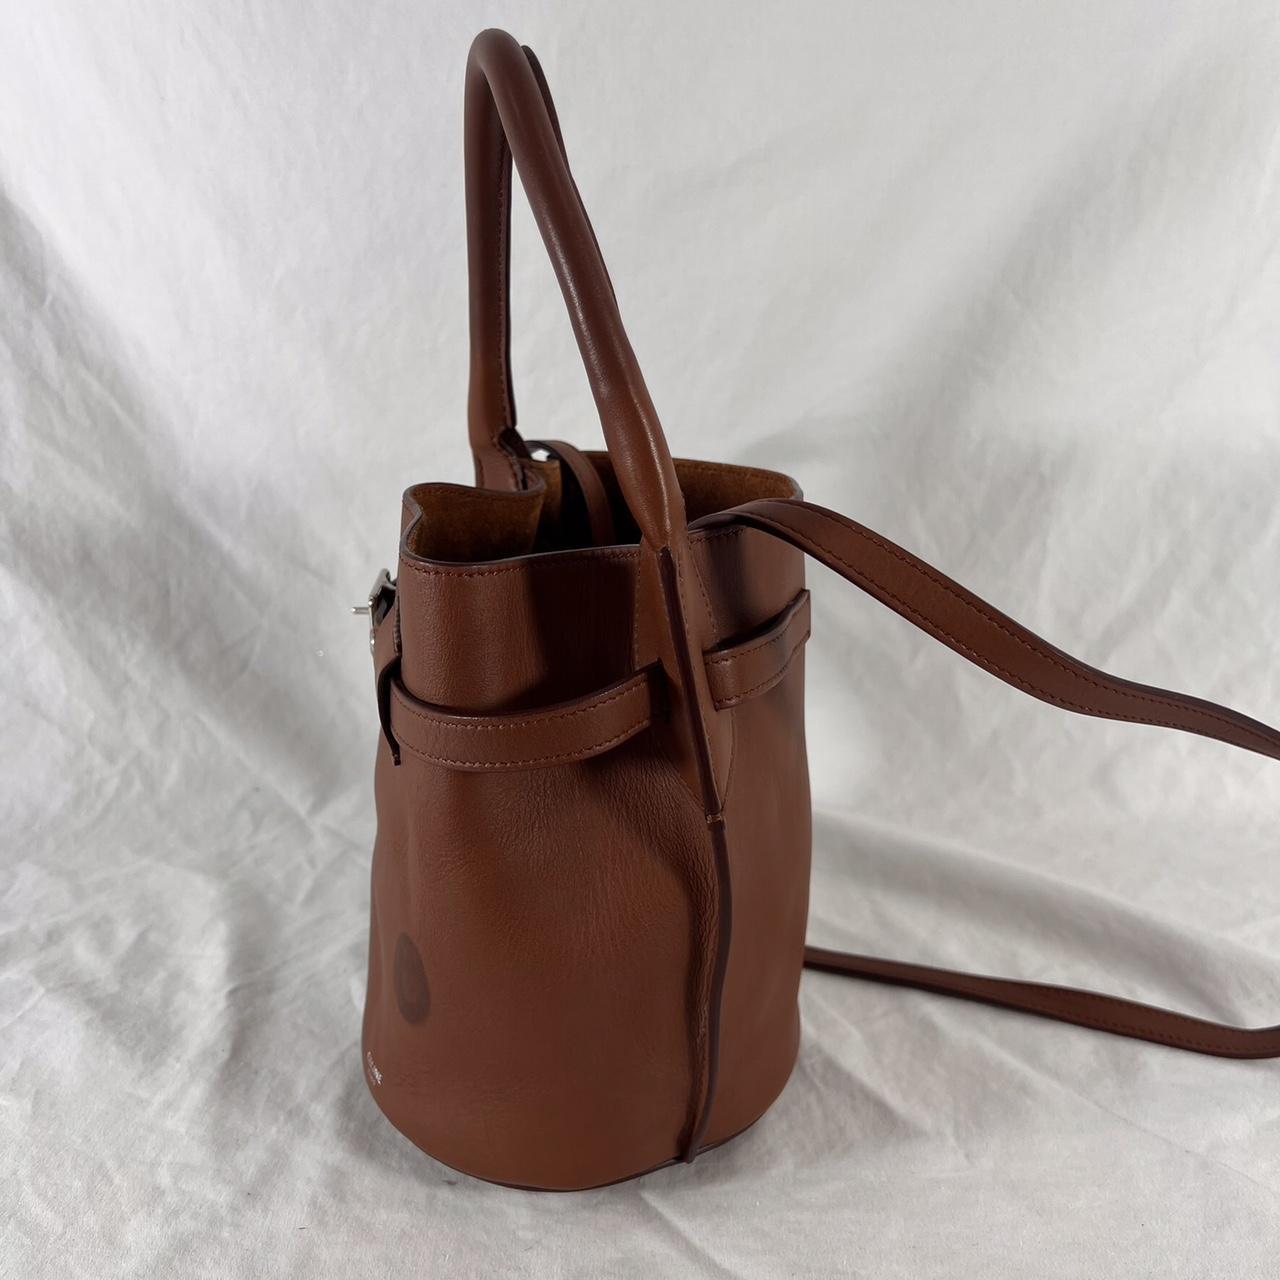 CELINE Tan Leather Big Bag Nano Bucket Bag Made in - Depop